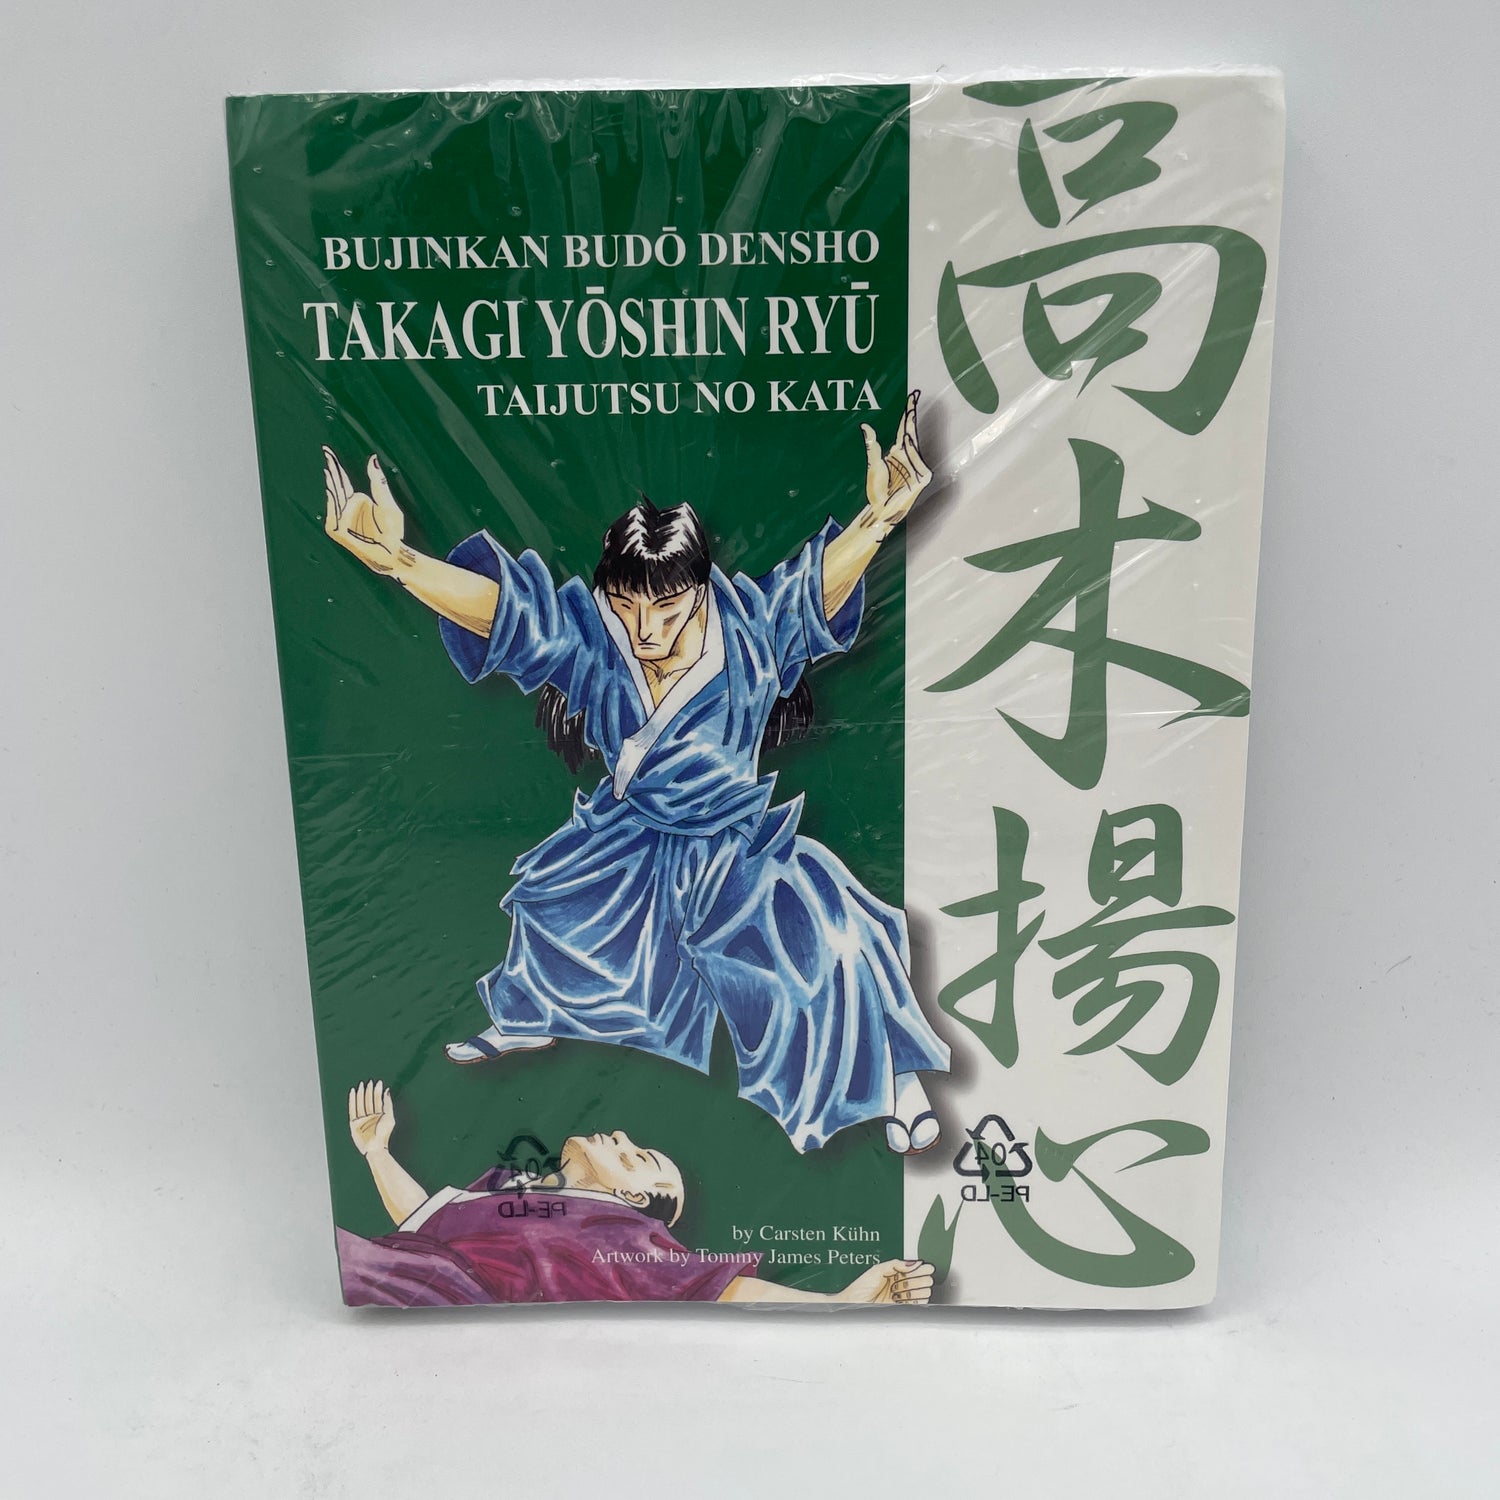 Bujinkan Budo Densho Book 7 Takagi Yoshin Ryu by Carsten Kuhn